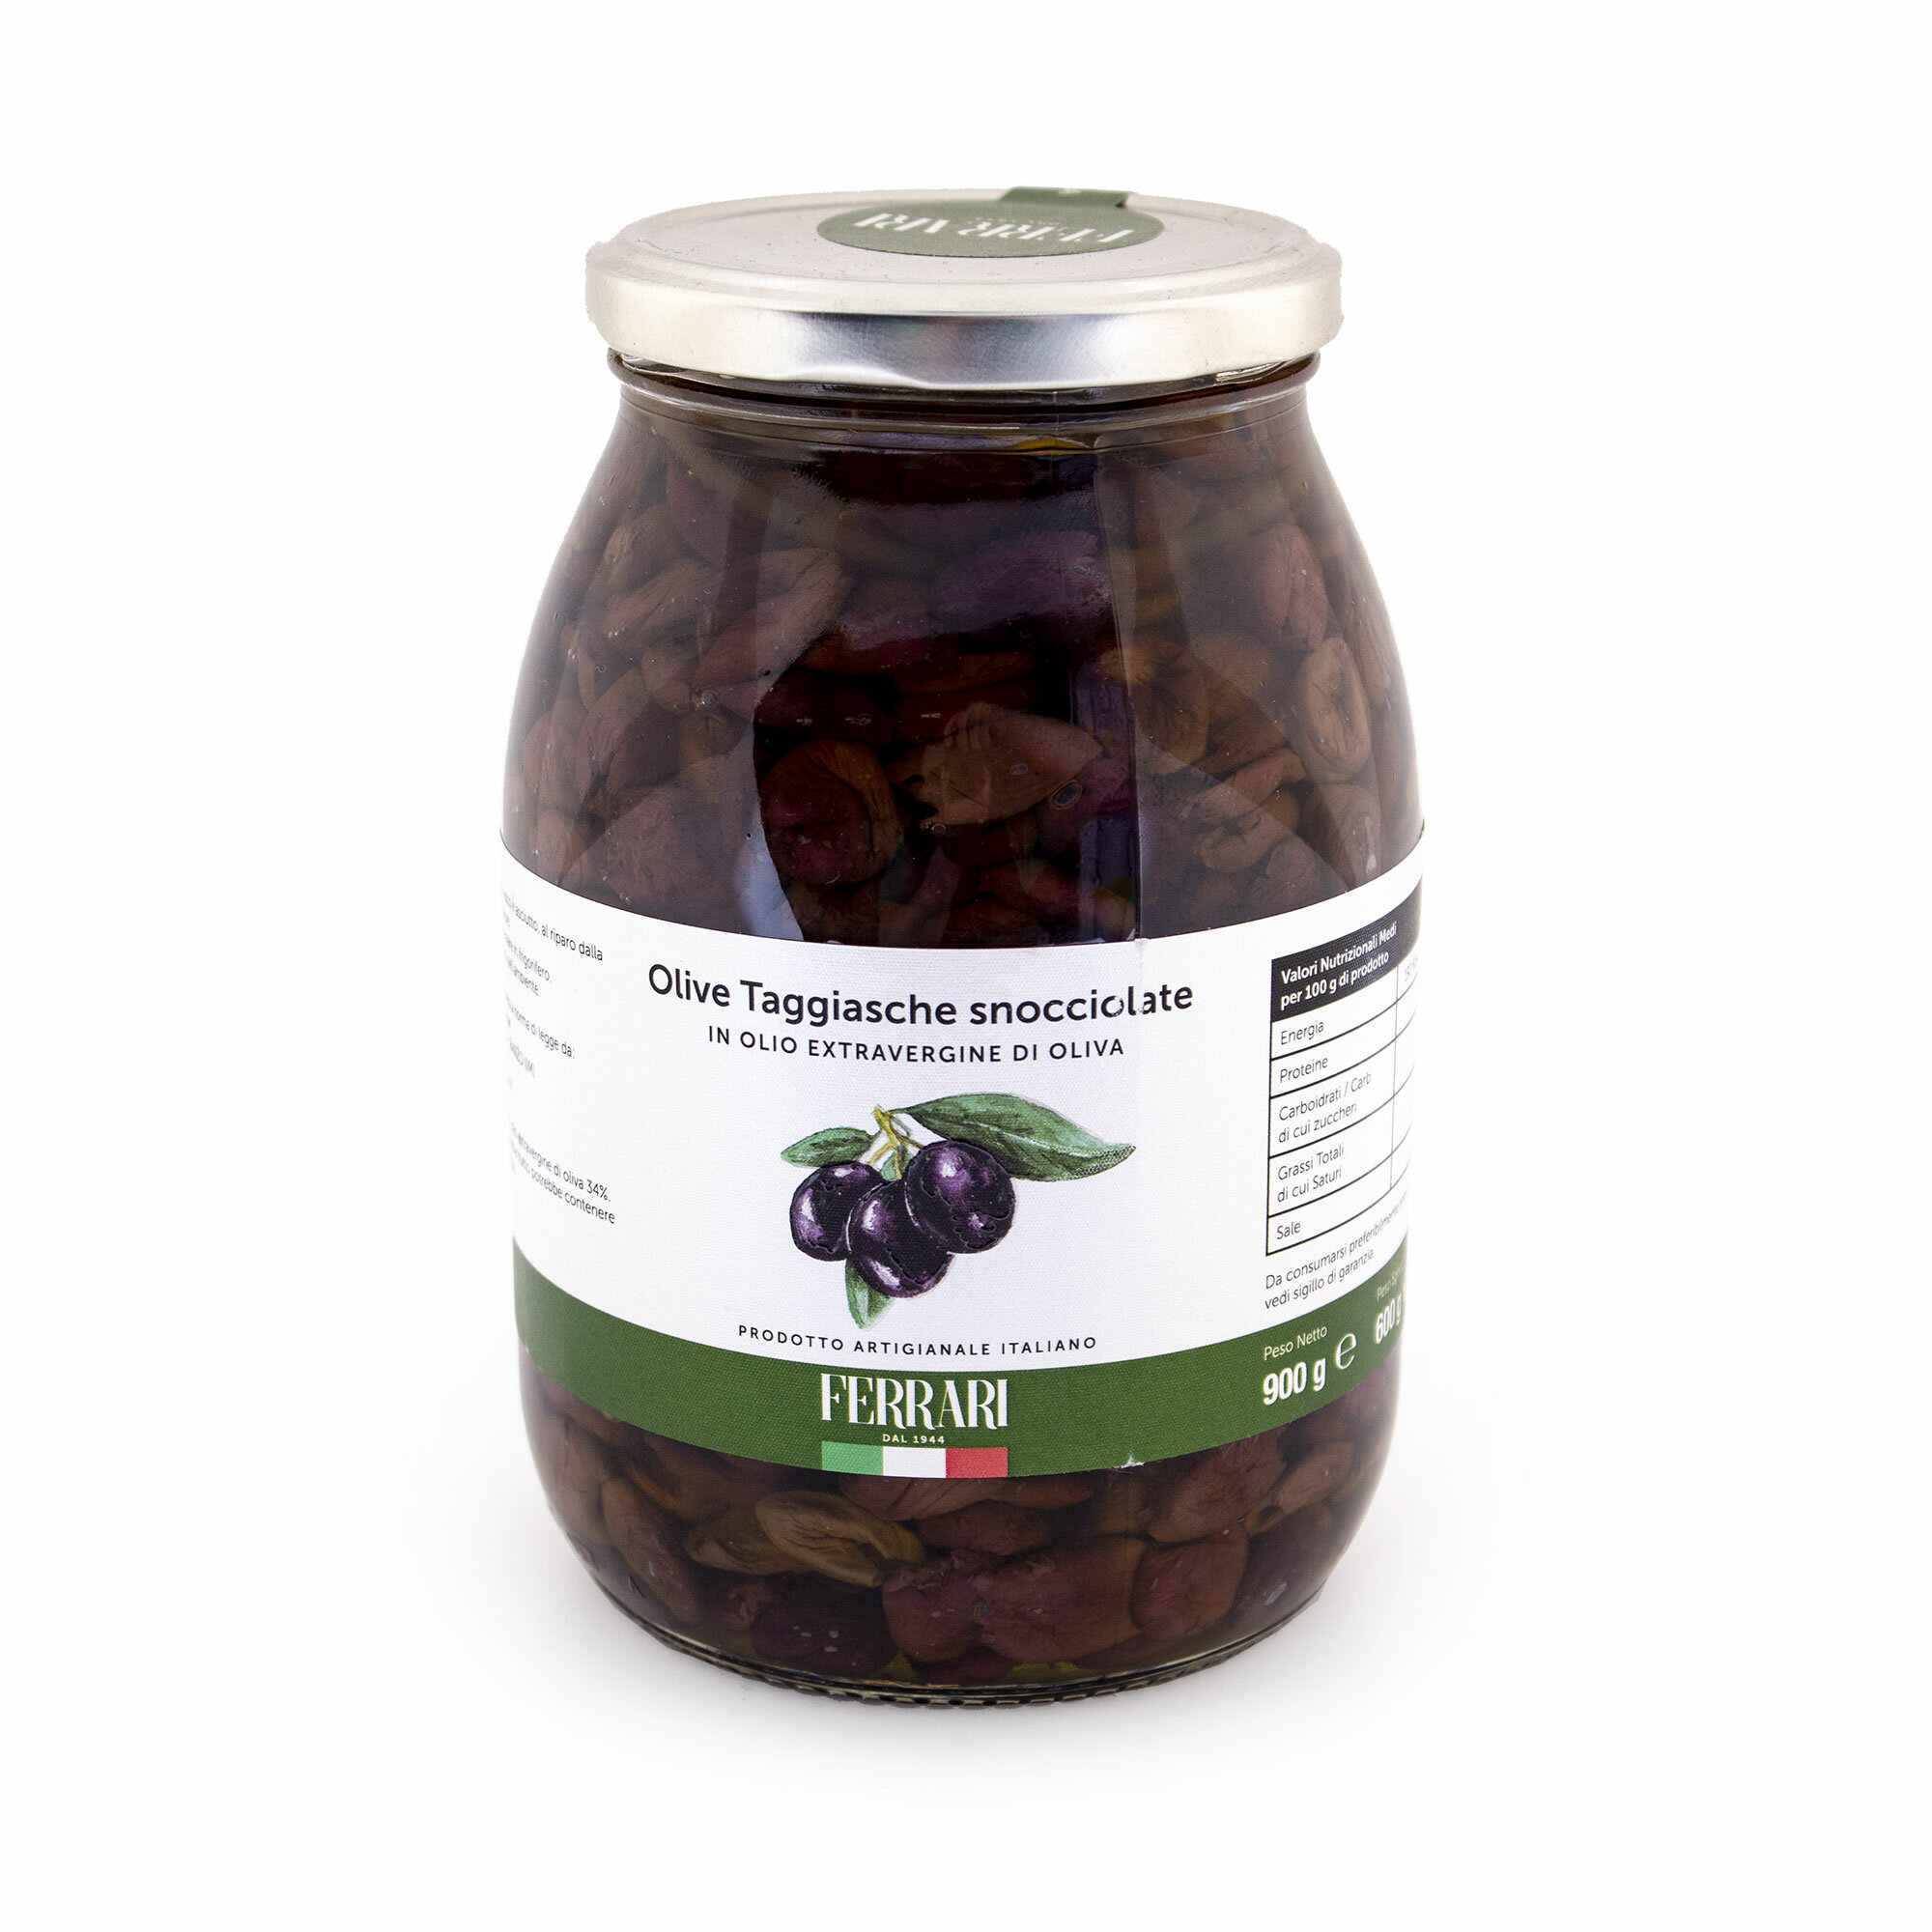 Оливки Таджаски без косточек в оливковом масле первого холодного отжима, FERRARI, 0,9 кг/0,6 кг (ст/б)